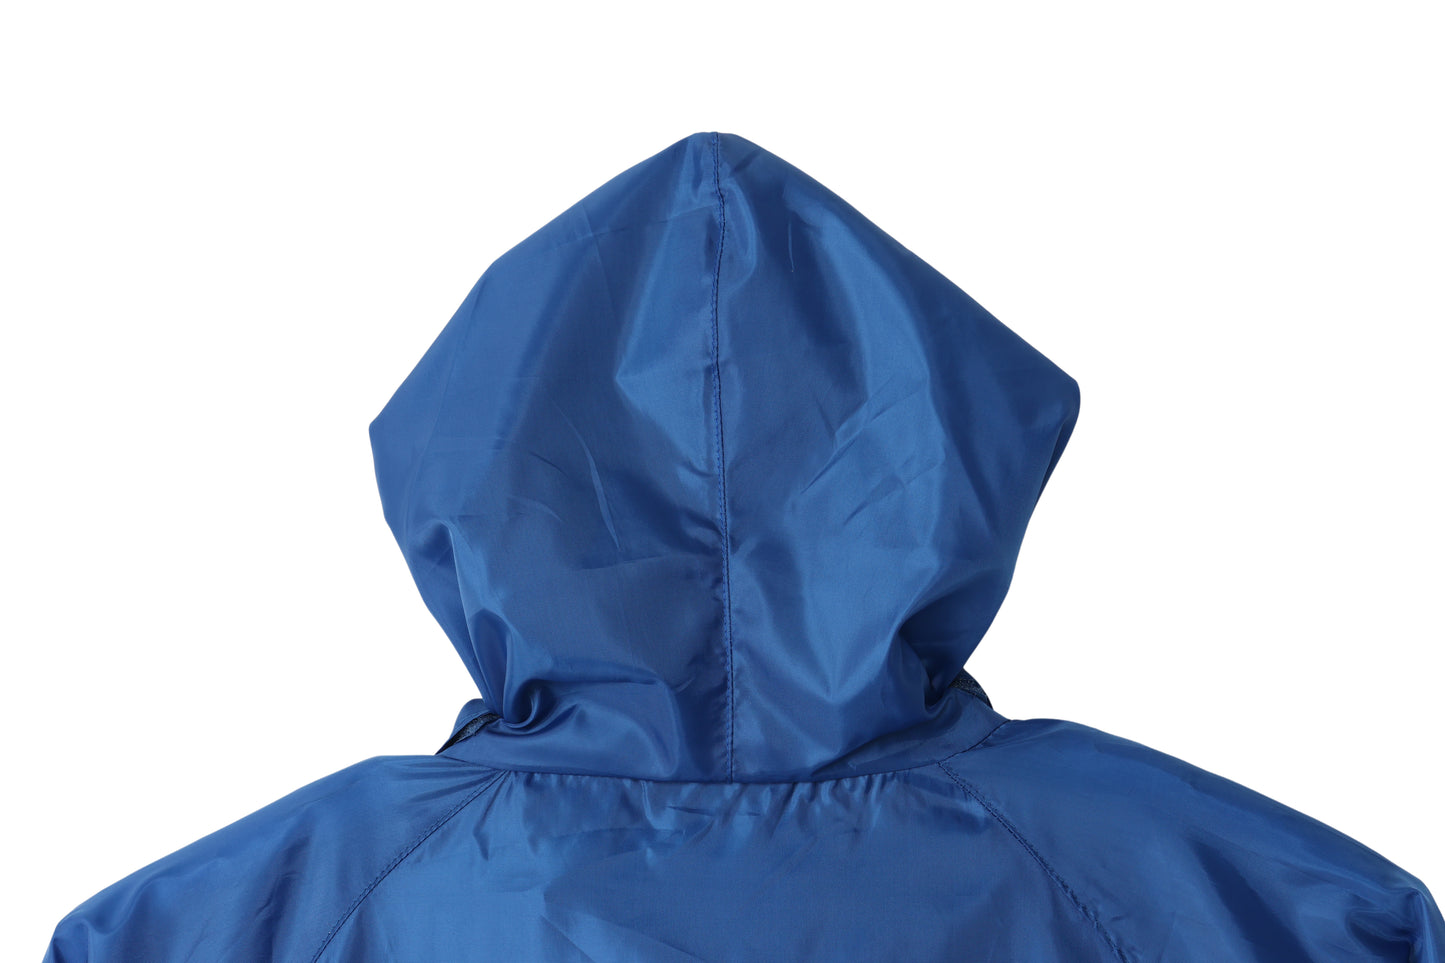 THROWBACK/Moto Jacket(BLUE)